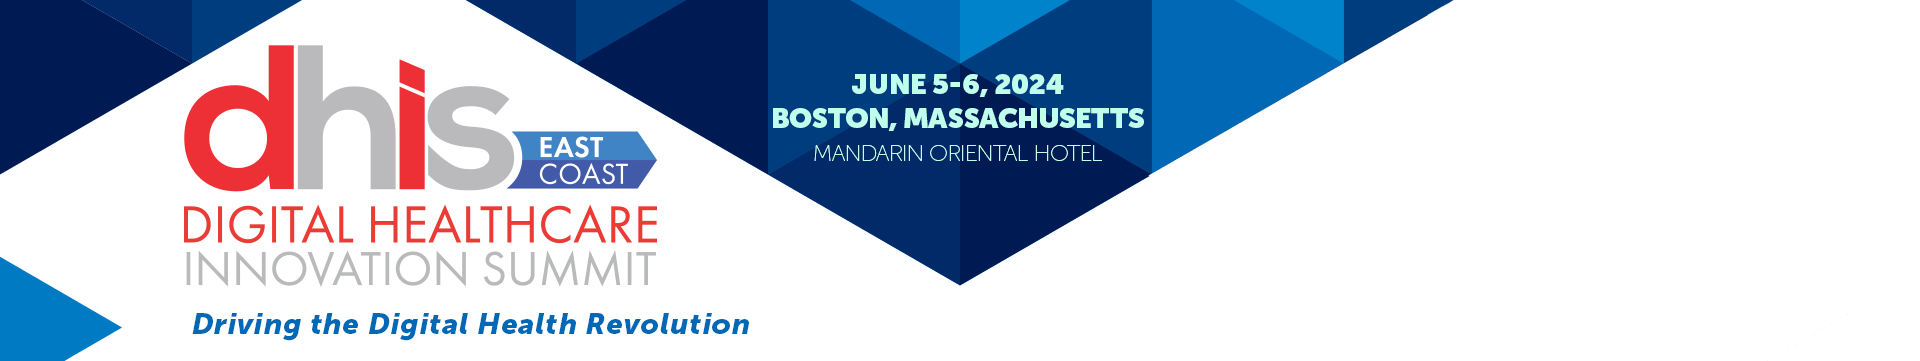 Digital Healthcare Innovation Summit (East) 2024, Boston, Massachusetts, United States